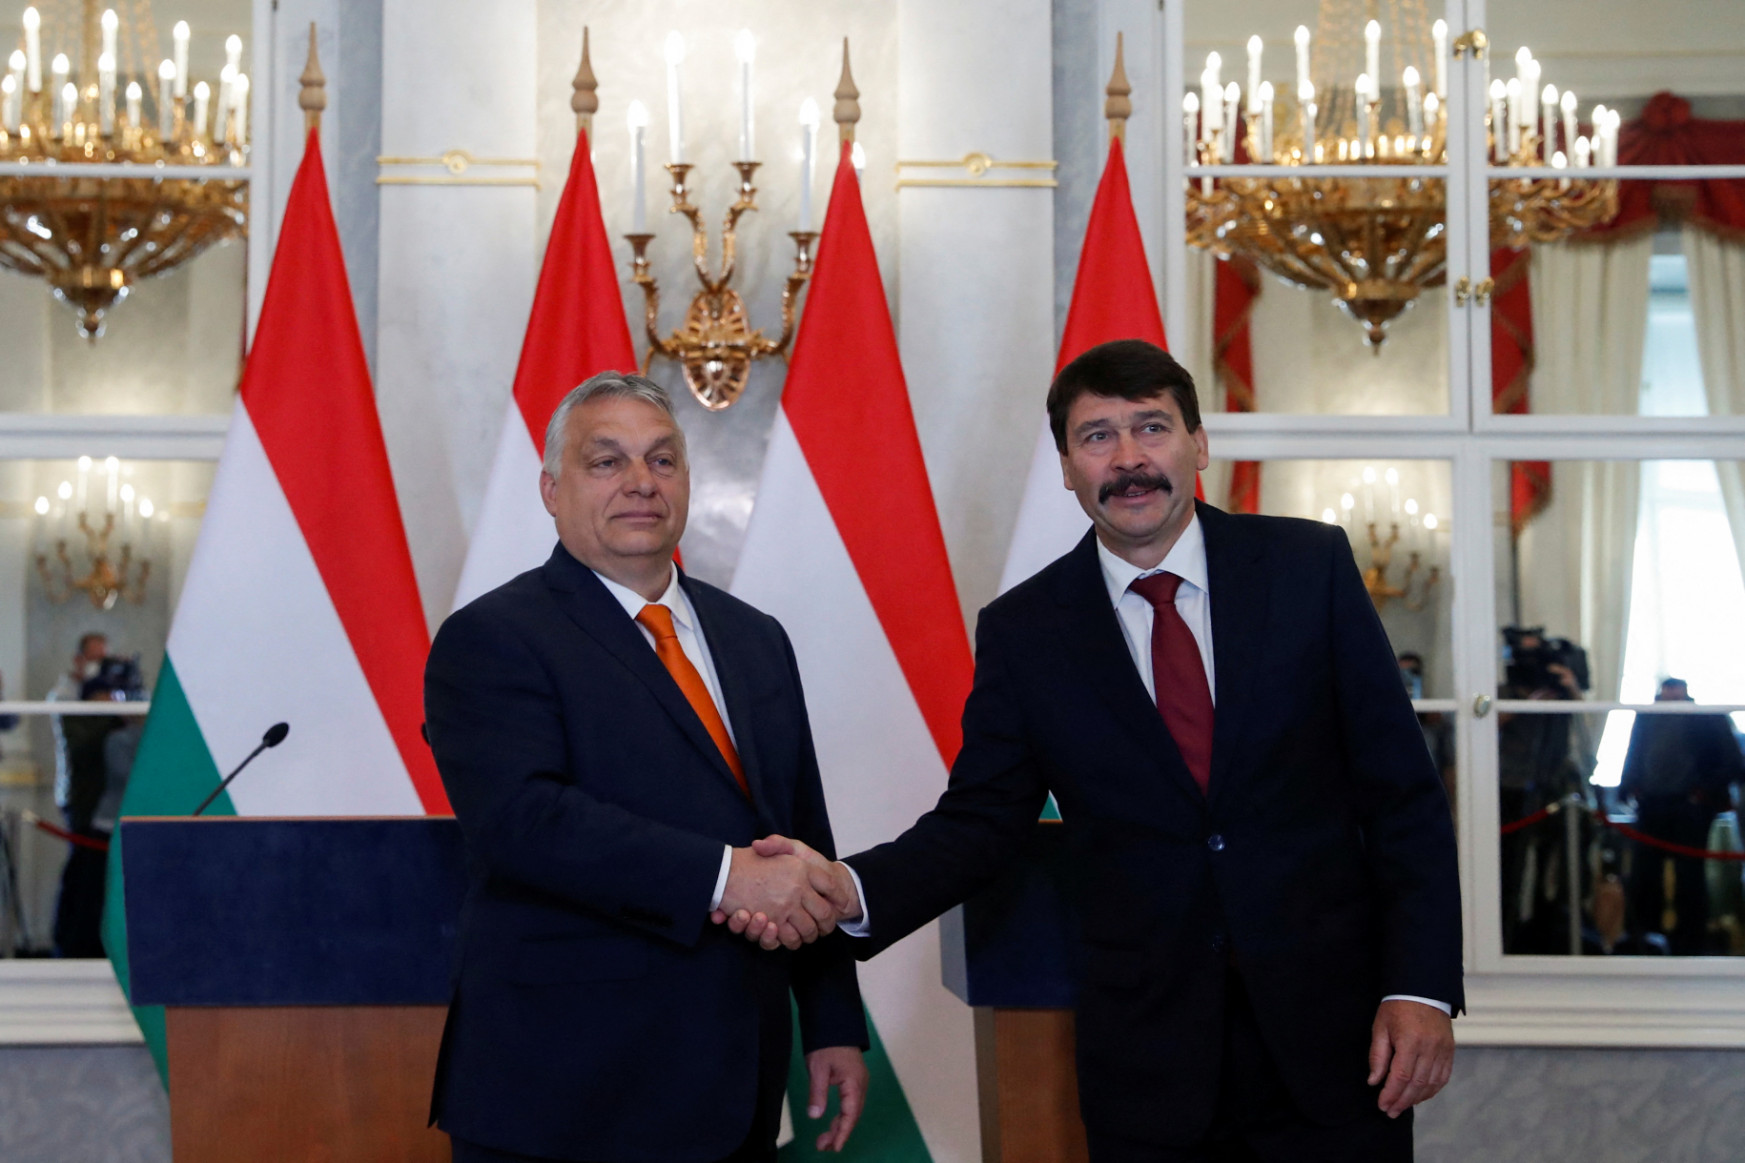 Áder János felkérte az új kormány megalakítására Orbán Viktort, aki vállalja a feladatot